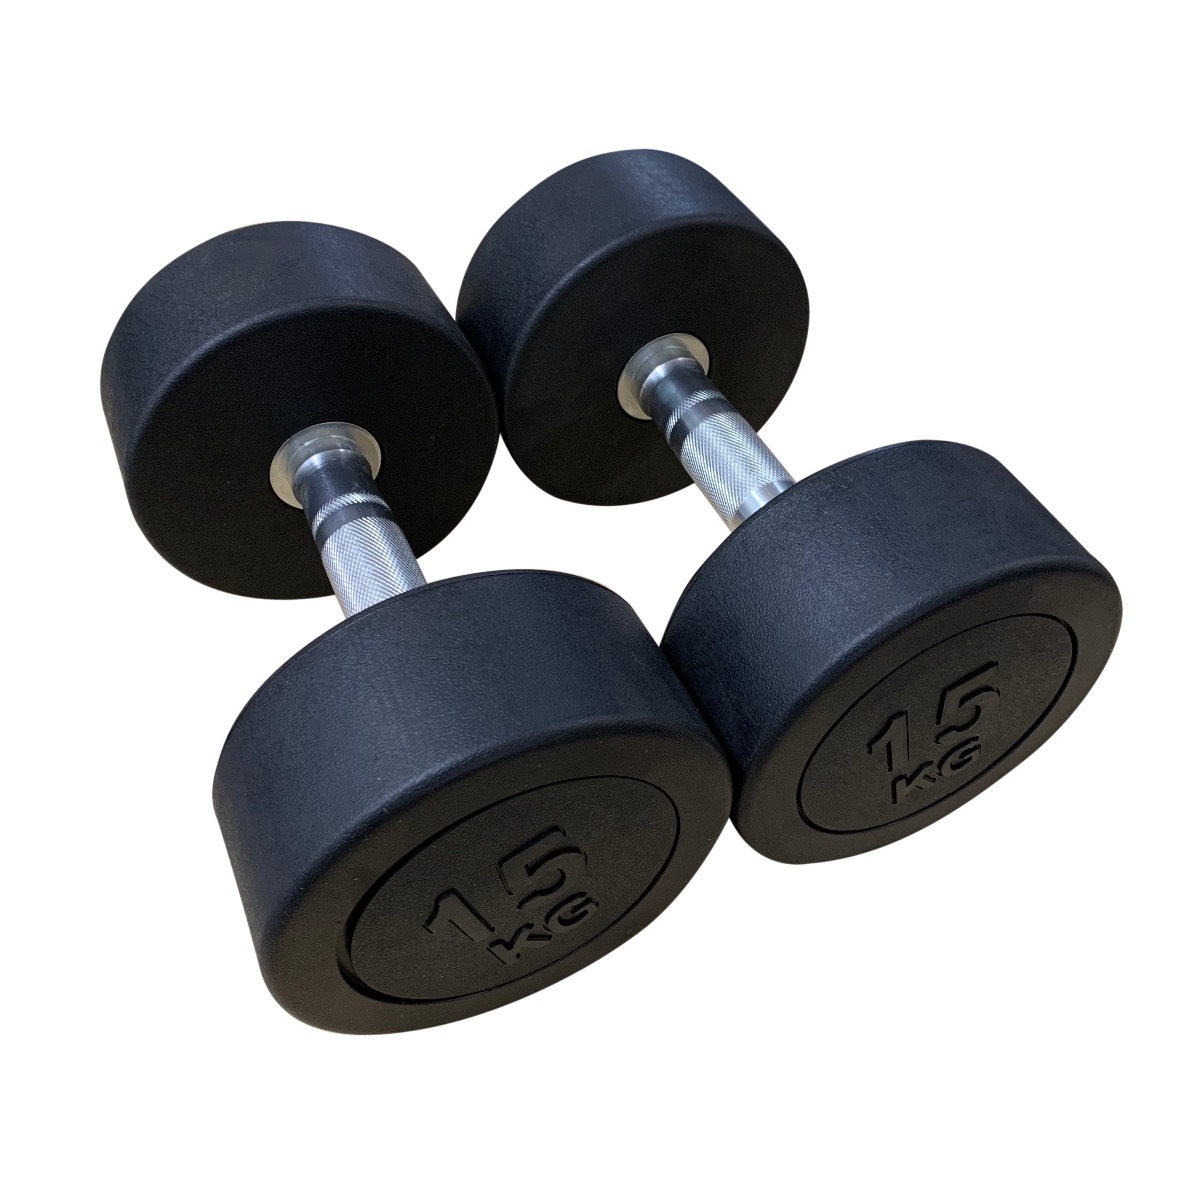 30kg Adjustable Rubber Dumbbell Set  Home Gym Workout Equipment – Marshal  Fitness